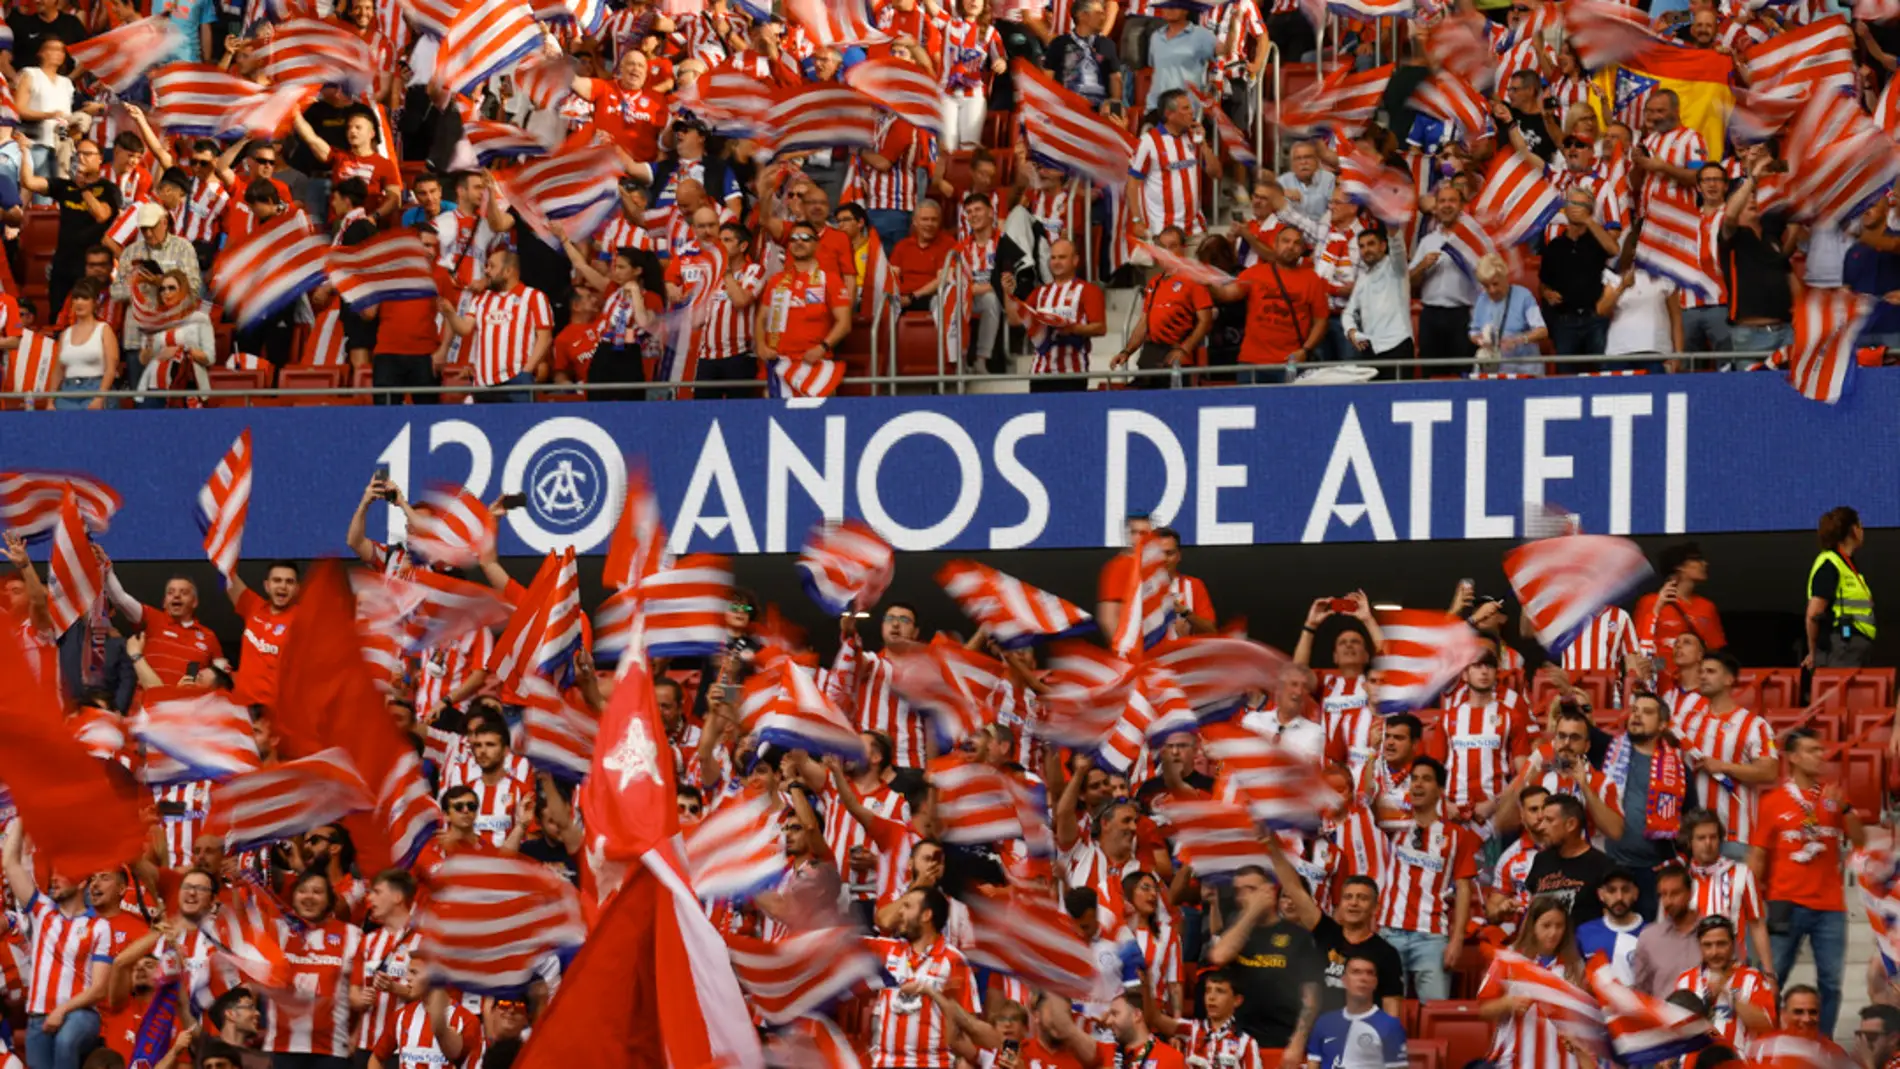 El Atlético realizará una consulta para volver al escudo anterior